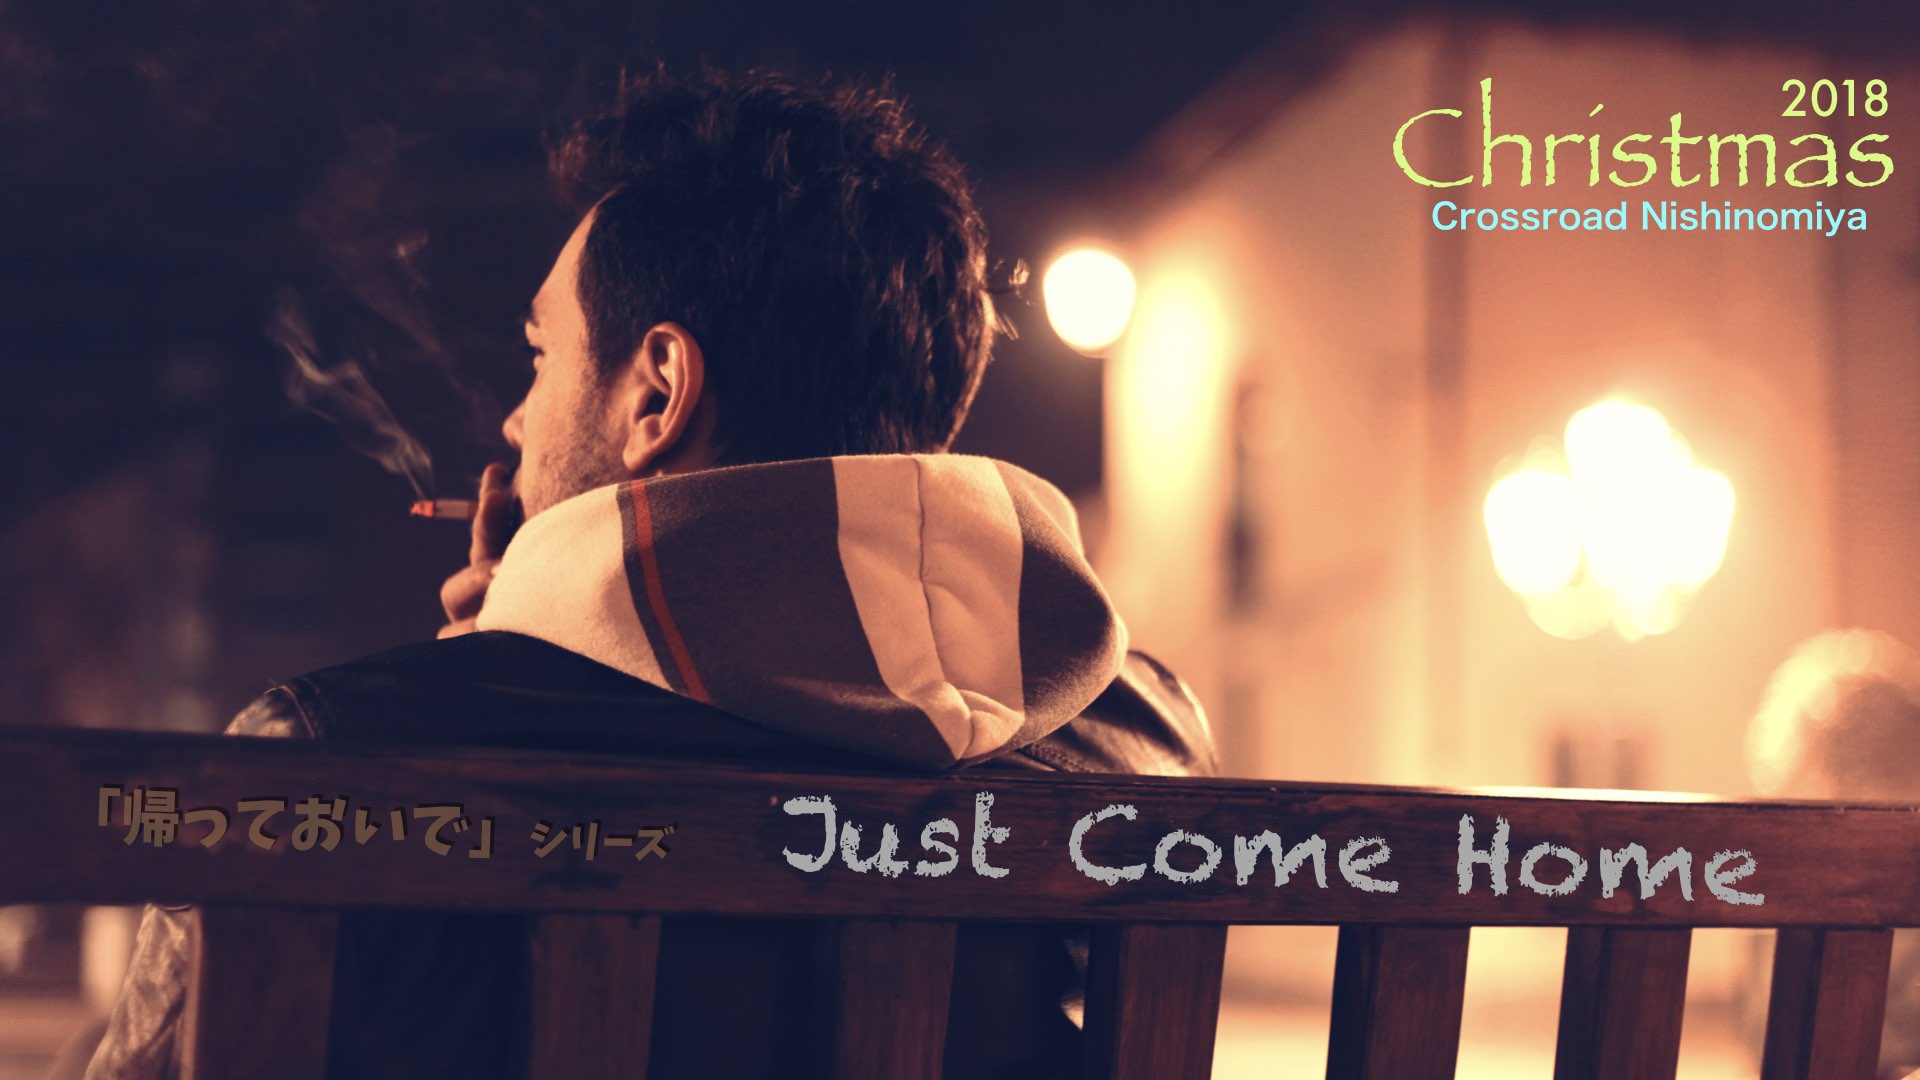 西宮クロスロード教会のメッセージシリーズ「Just Come Home」